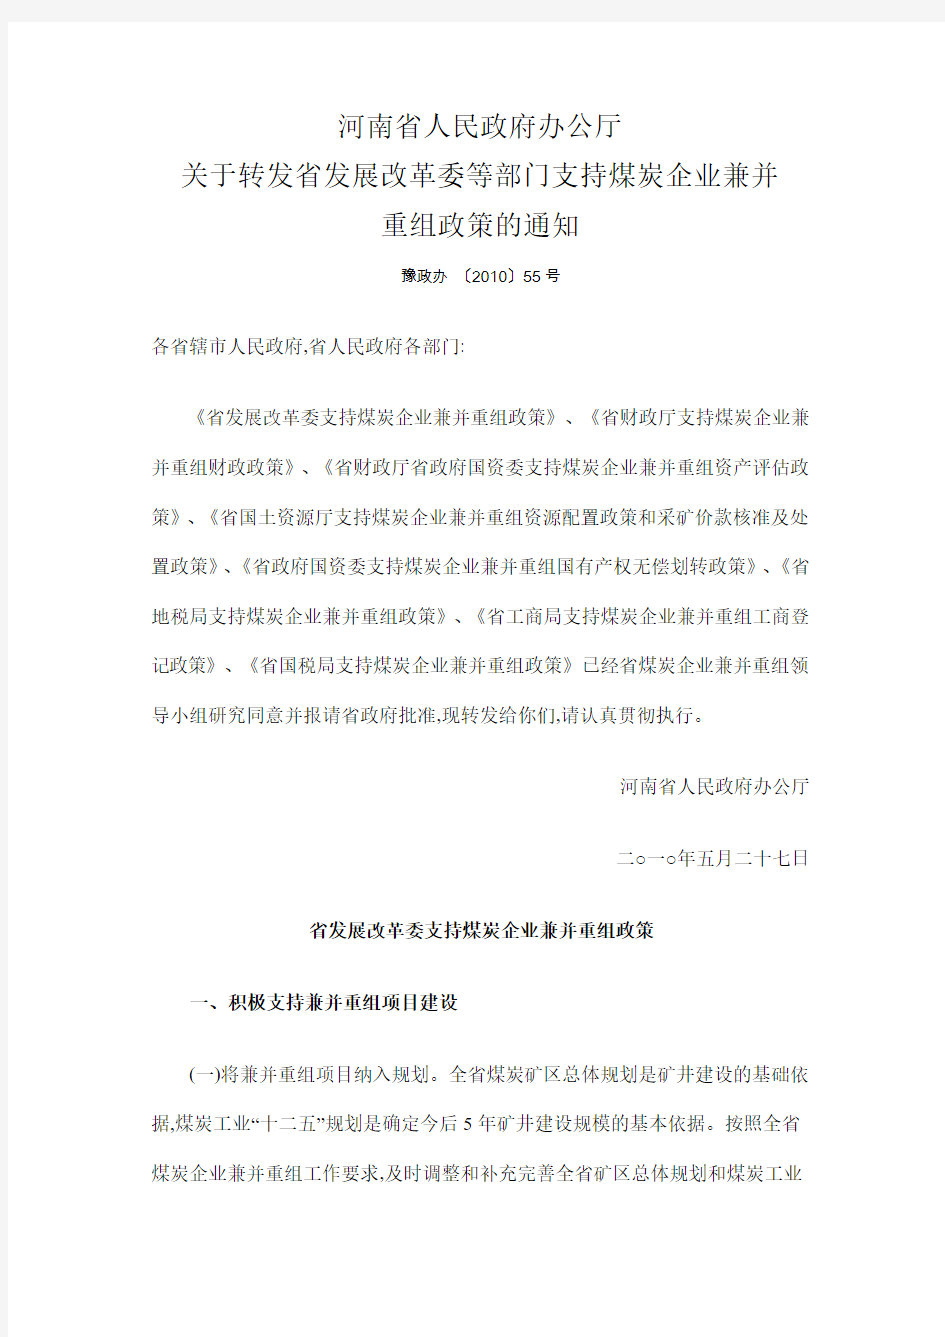 河南省人民政府办公厅关于转发省发展改革委等部门支持煤炭企业兼并重组政策的通知5.27